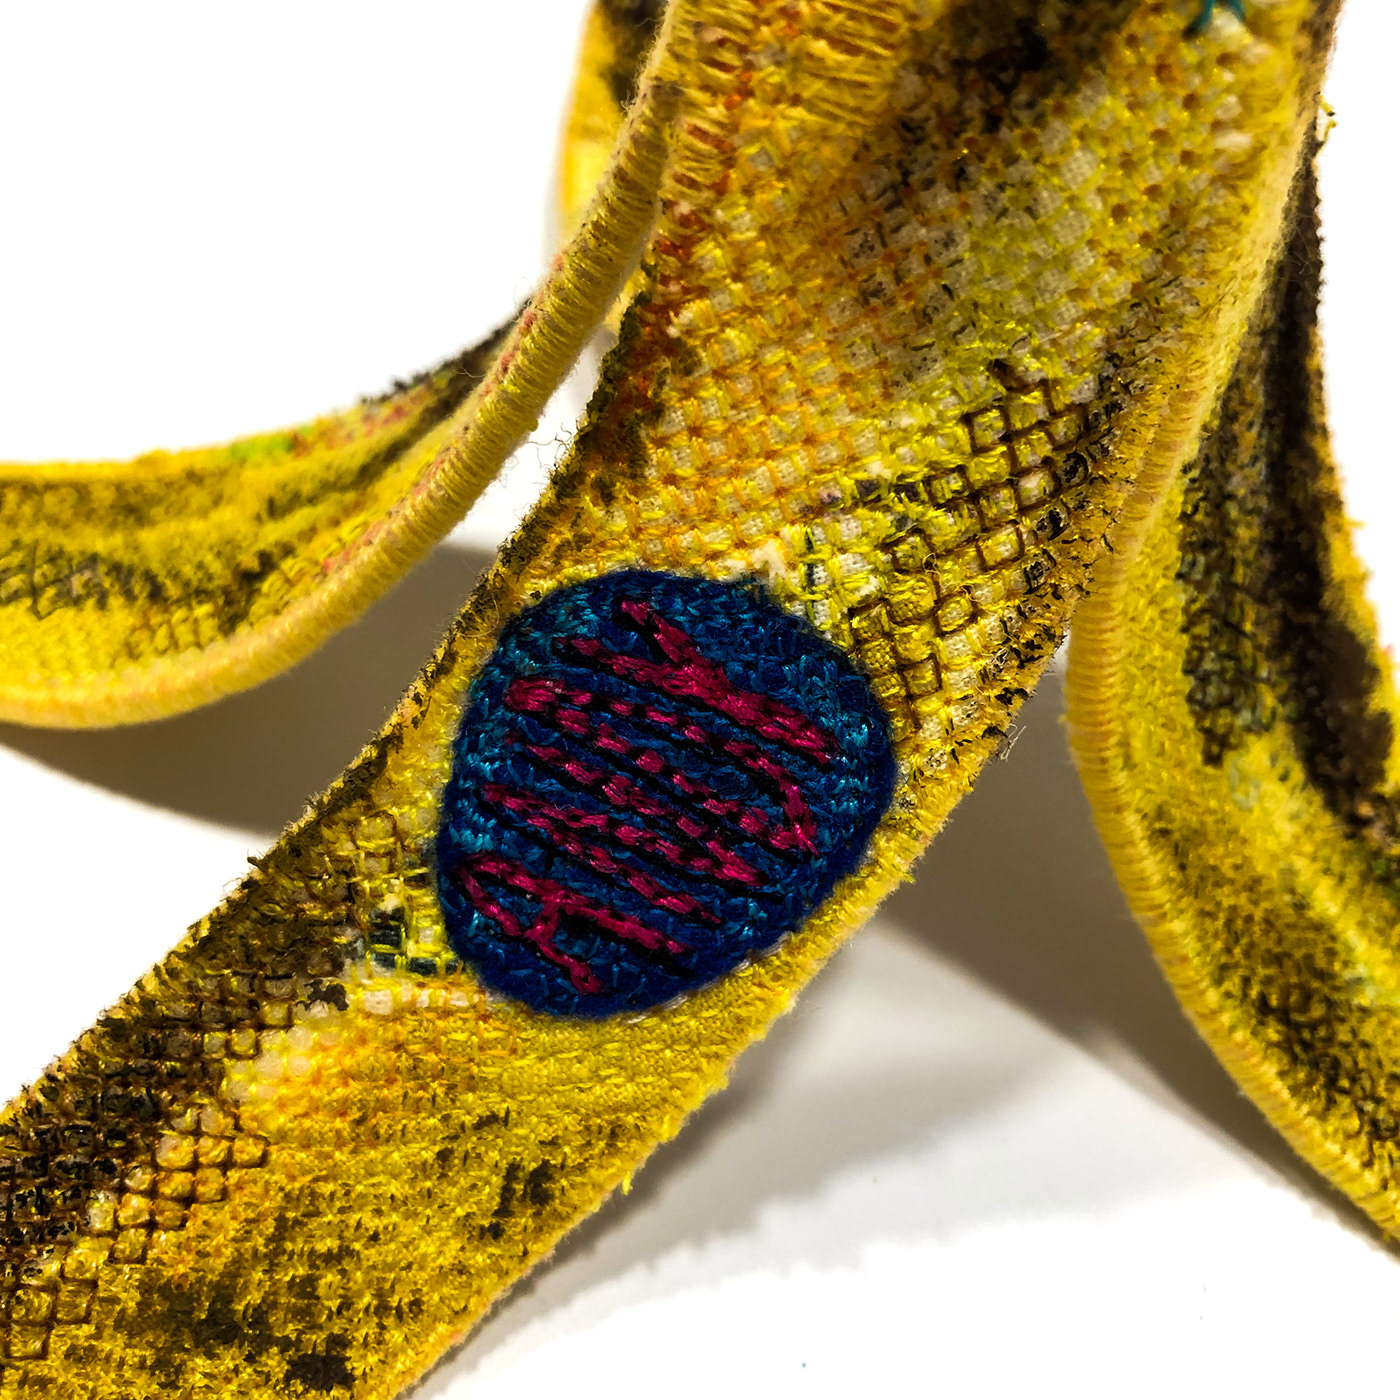 Andy Warhol art quilt banana Embroidery felt fibre art modern popart sculpture textile art